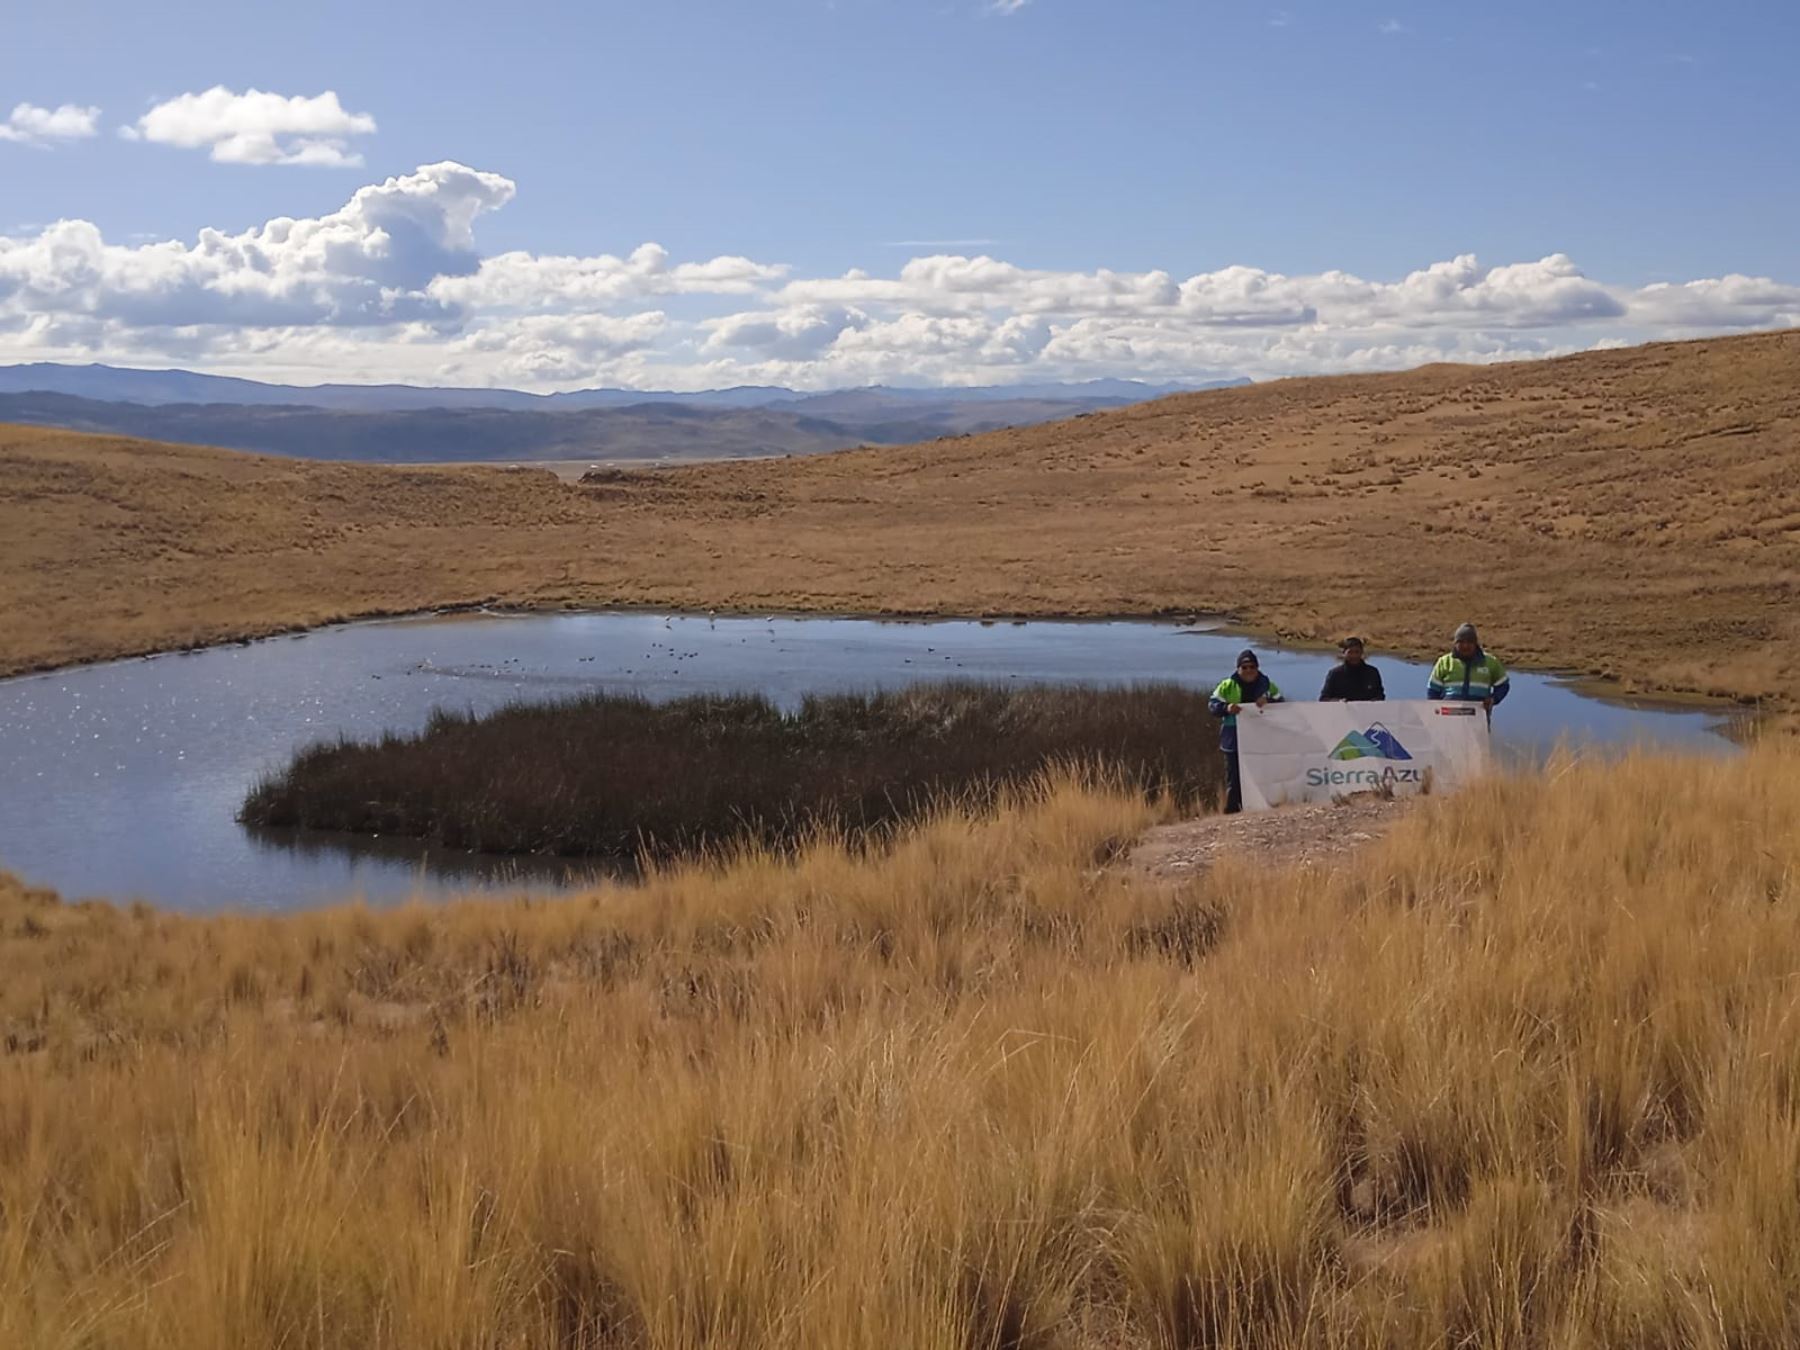 El fondo Sierra Azul ratificó que se Impulsará la implementación de cochas para enfrentar el cambio climático y garantizar agua en zonas andinas.